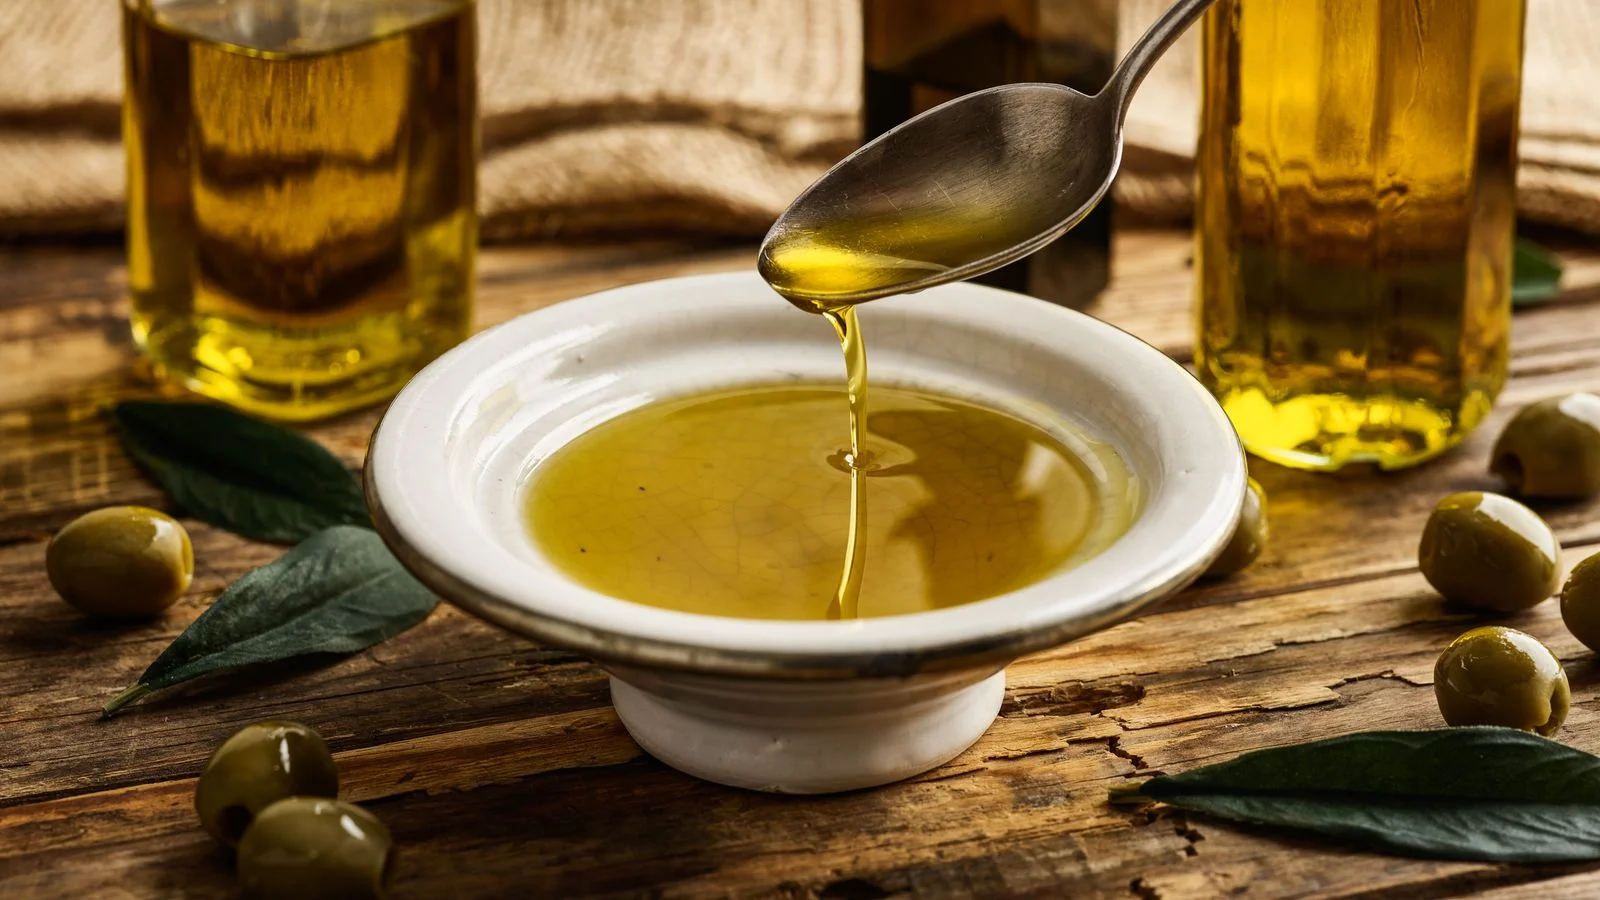 Comment utilise-t-on l’huile d’olive ? Quels sont les avantages et les inconvénients de l’huile d’olive ?